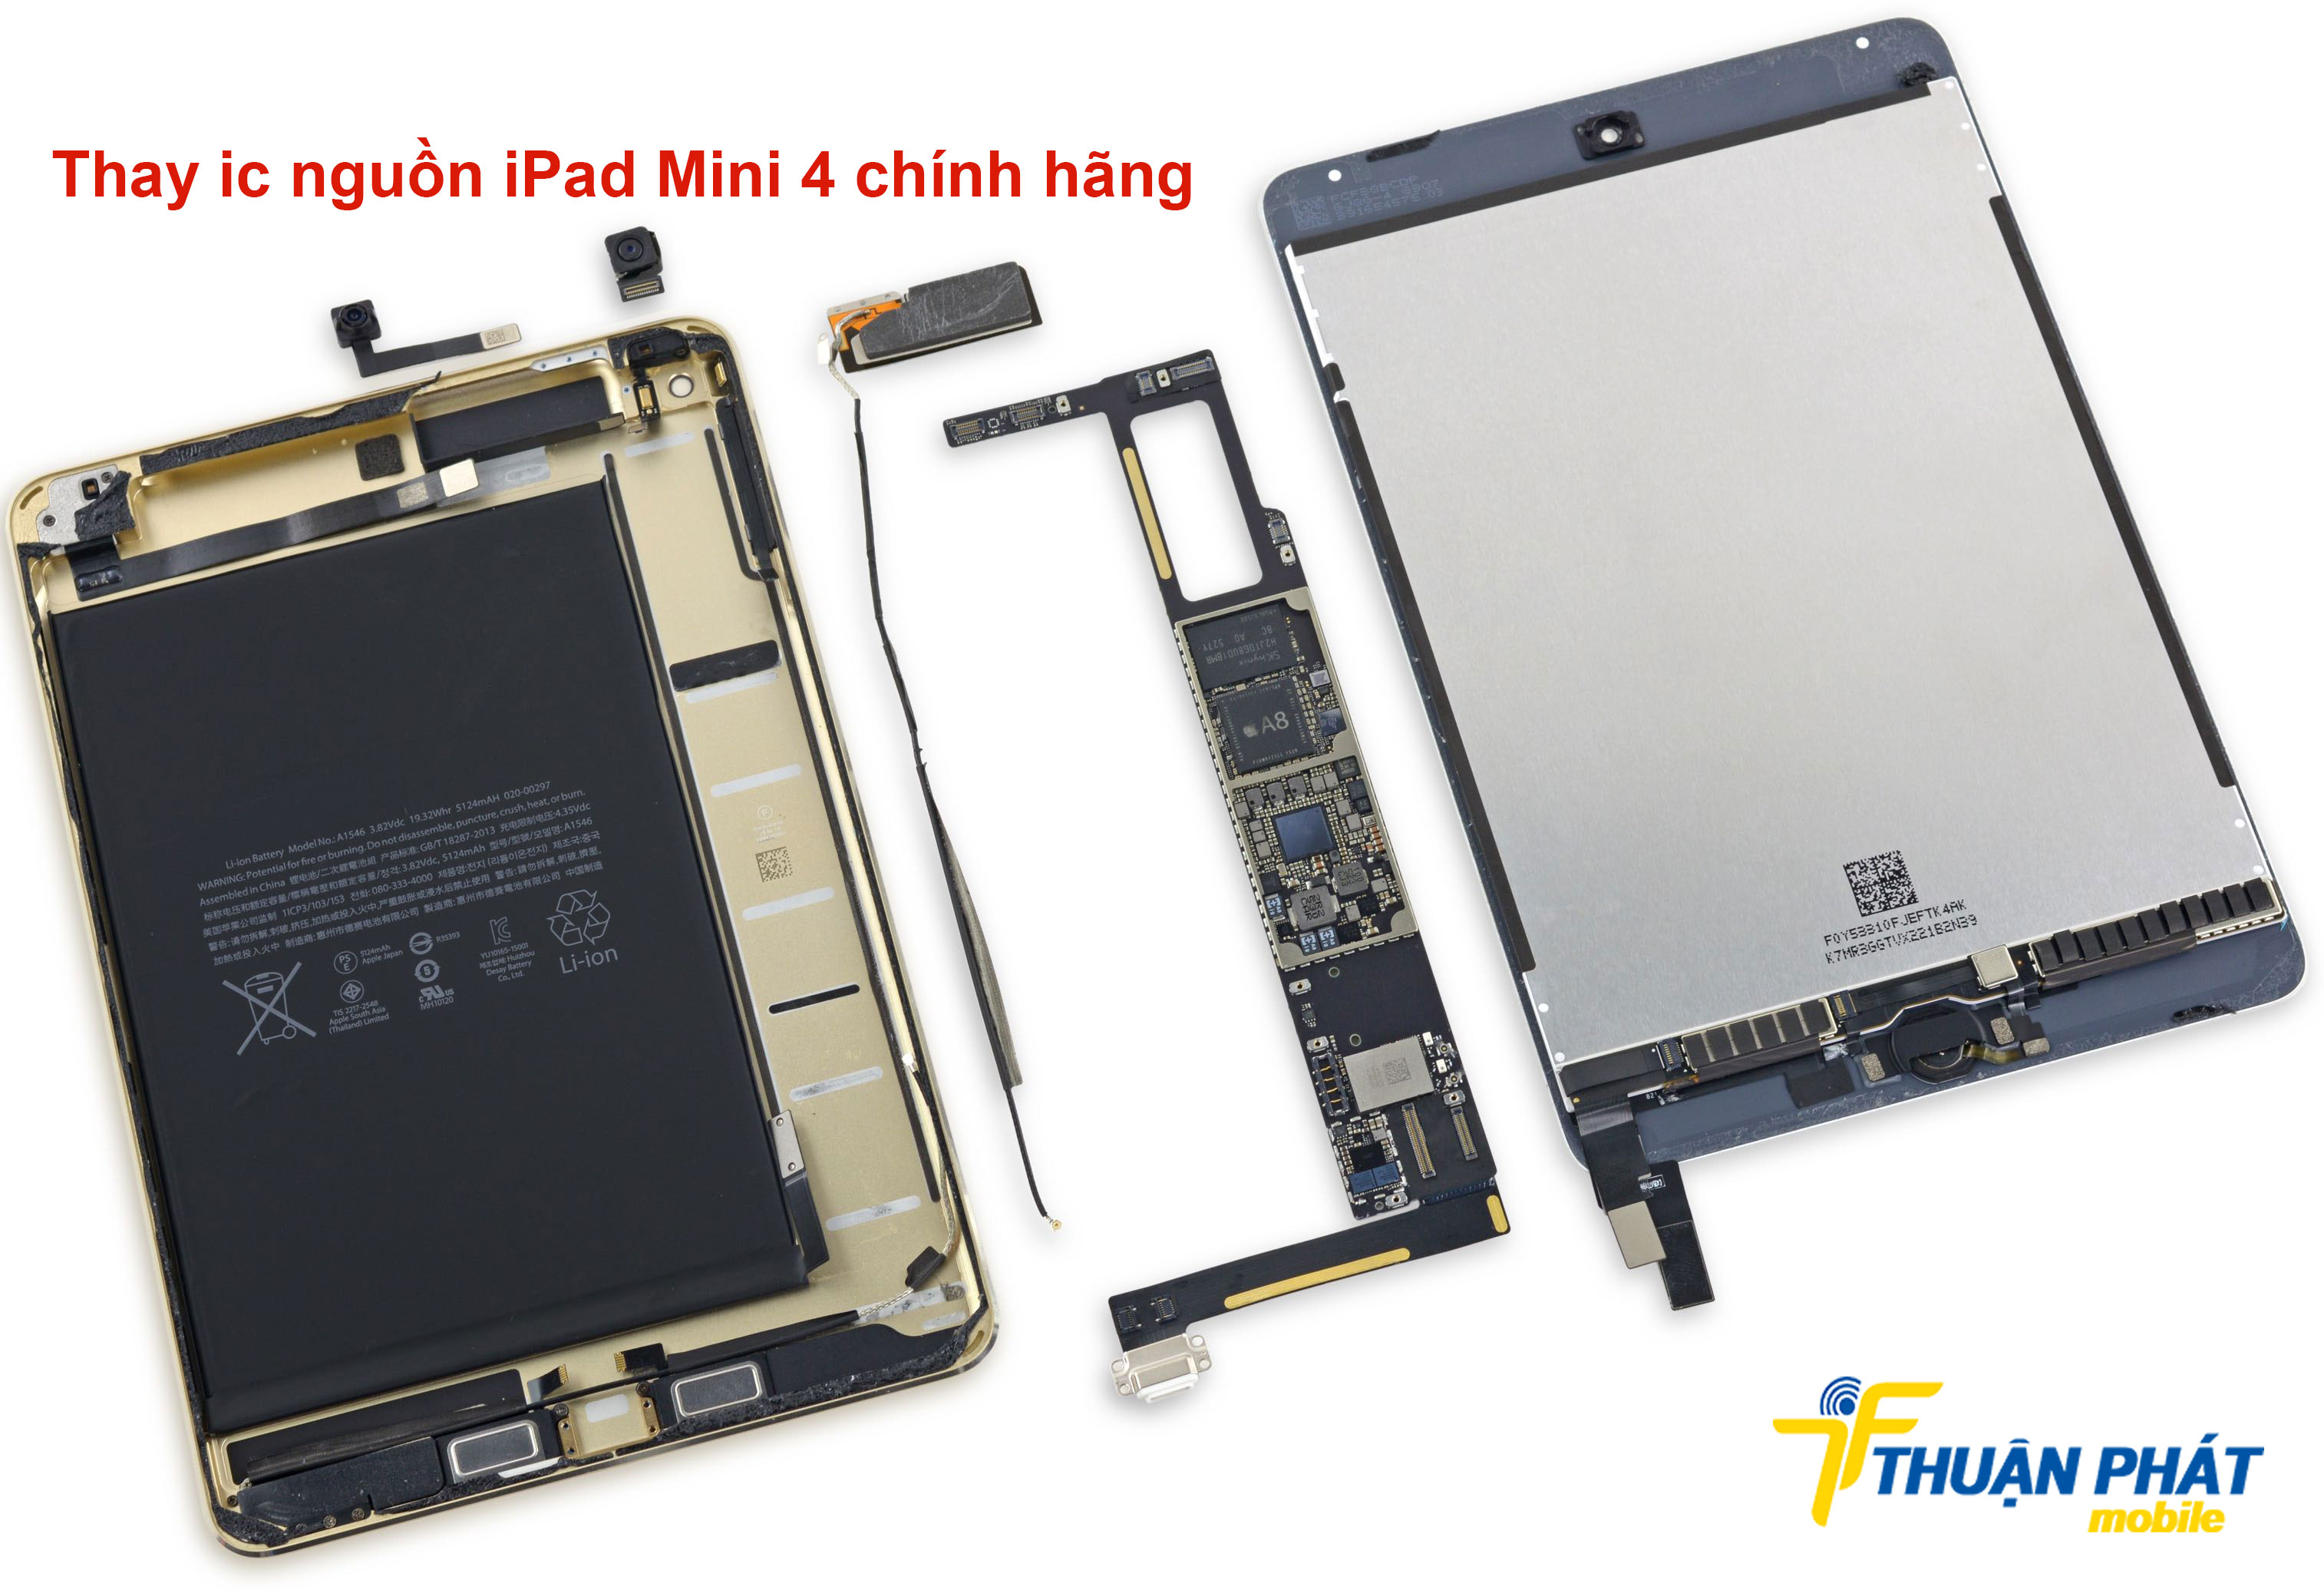 Thay ic nguồn iPad Mini 4 chính hãng